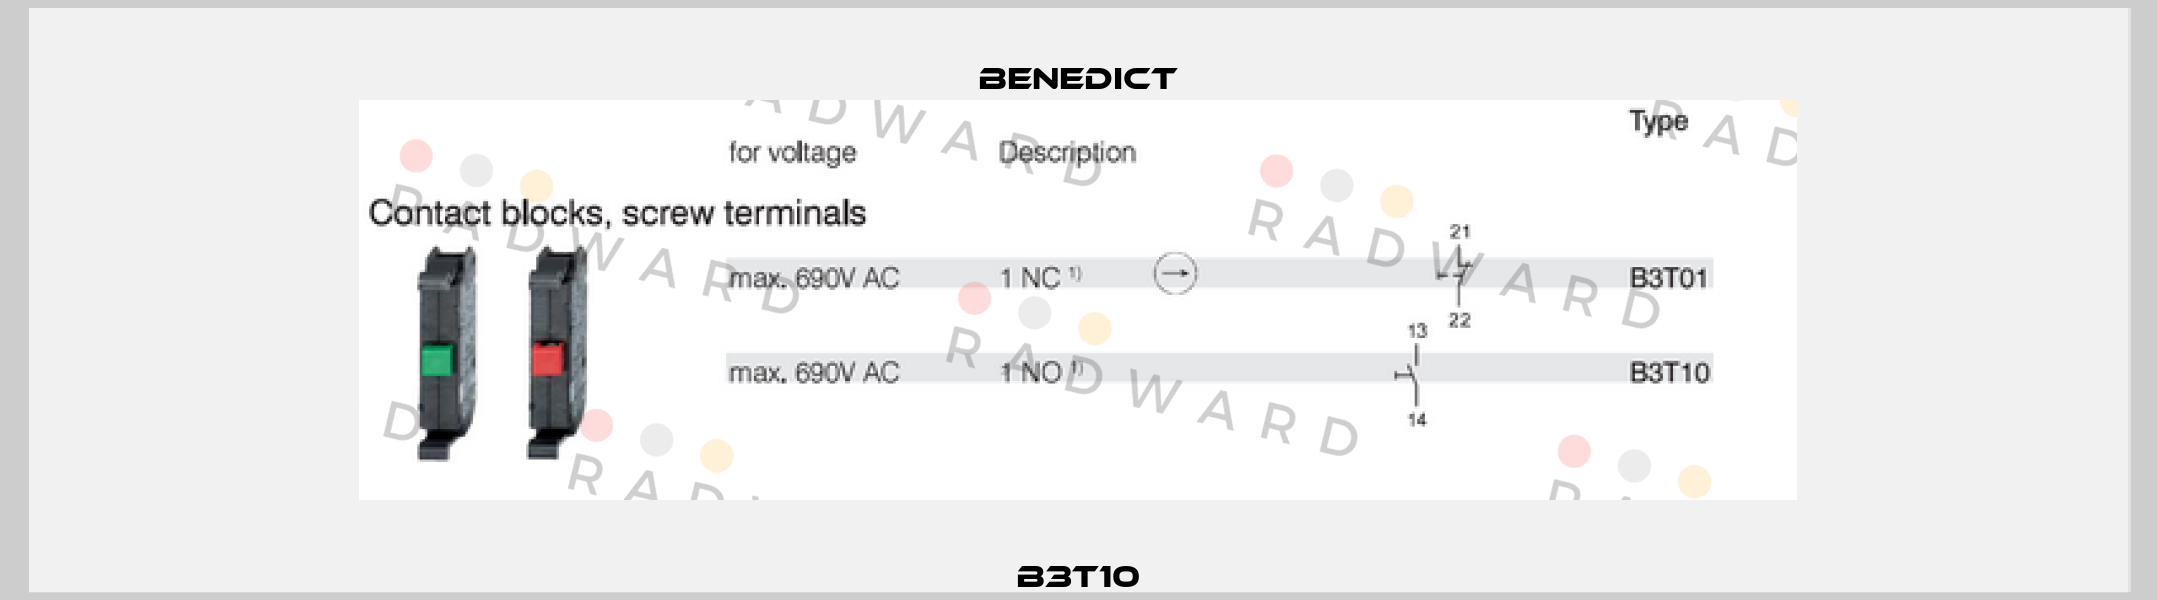 B3T10 Benedict